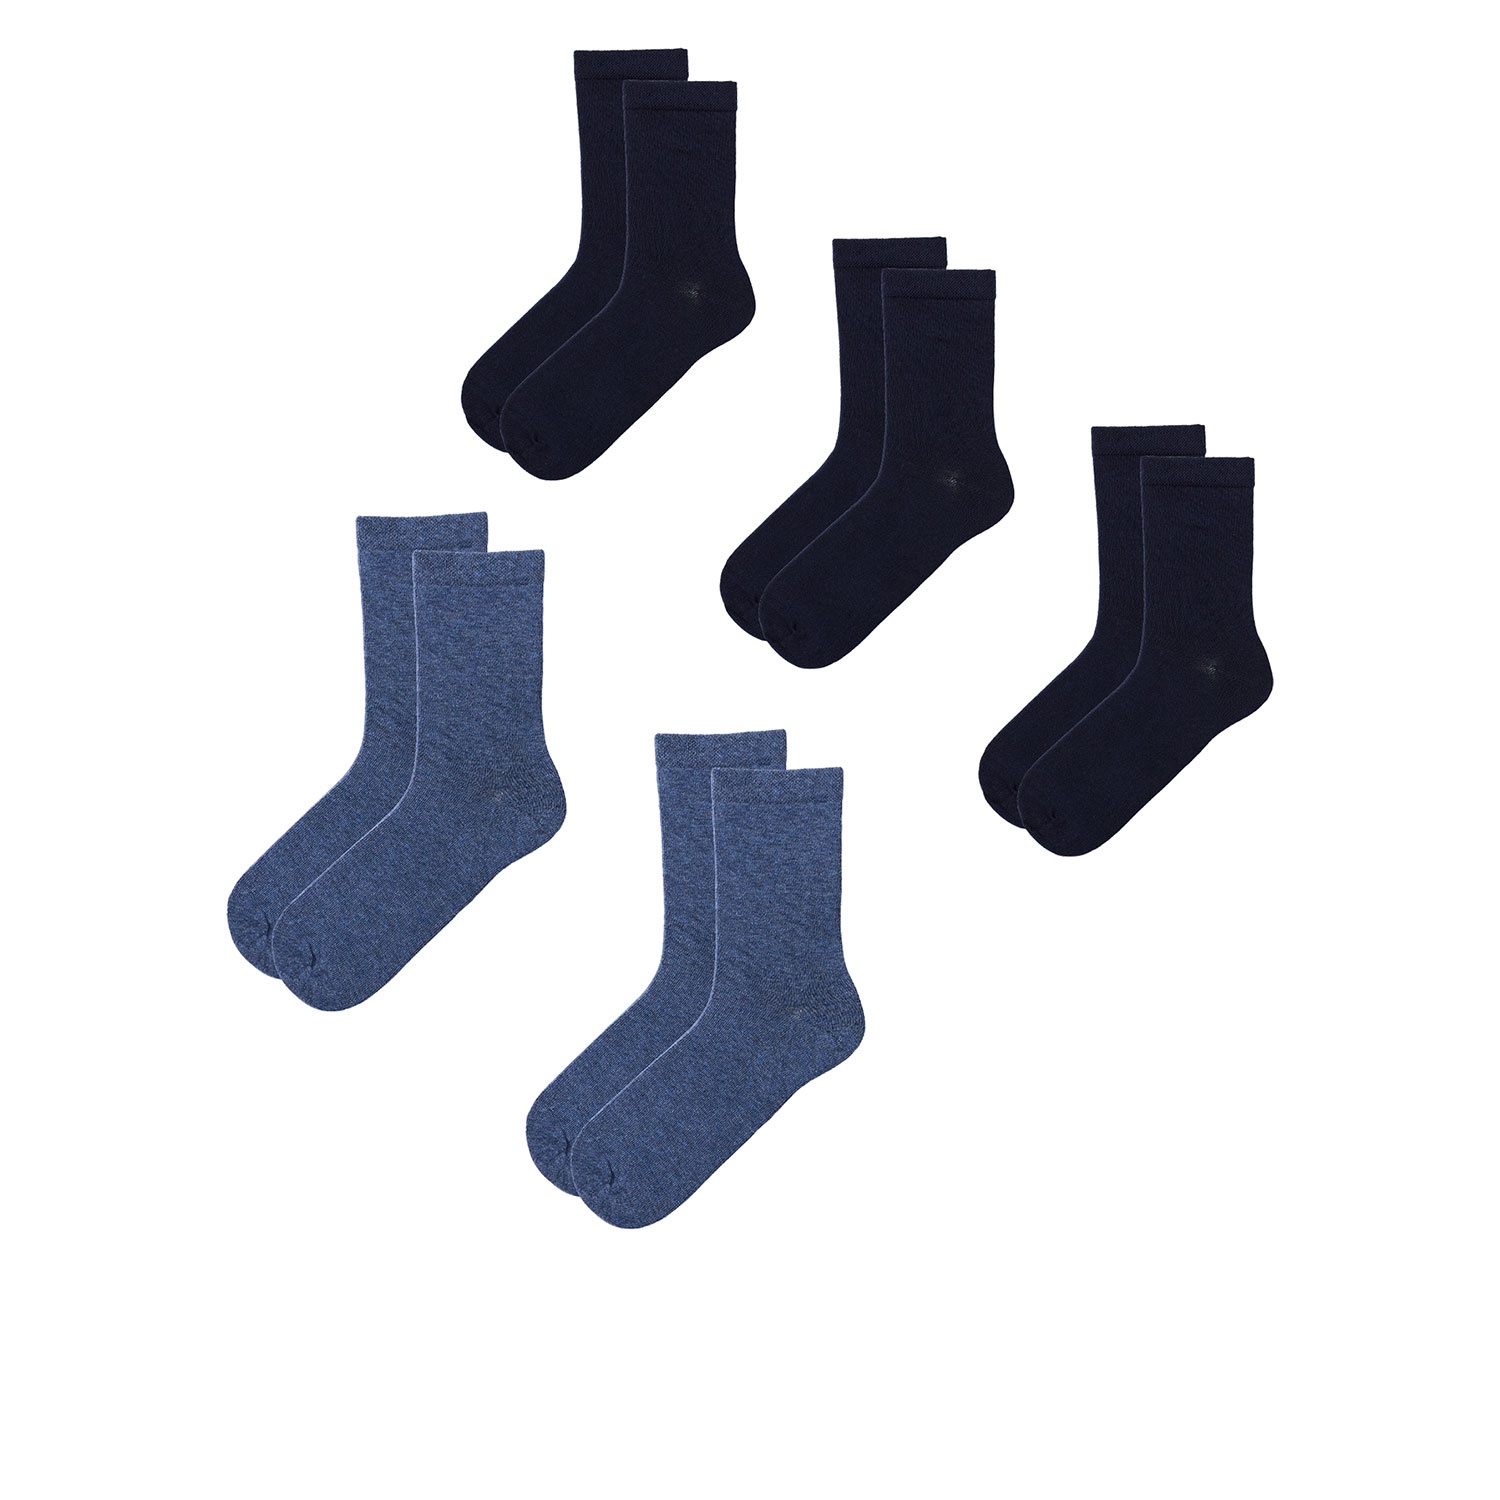 Damen oder Herren Socken, 5 Paar